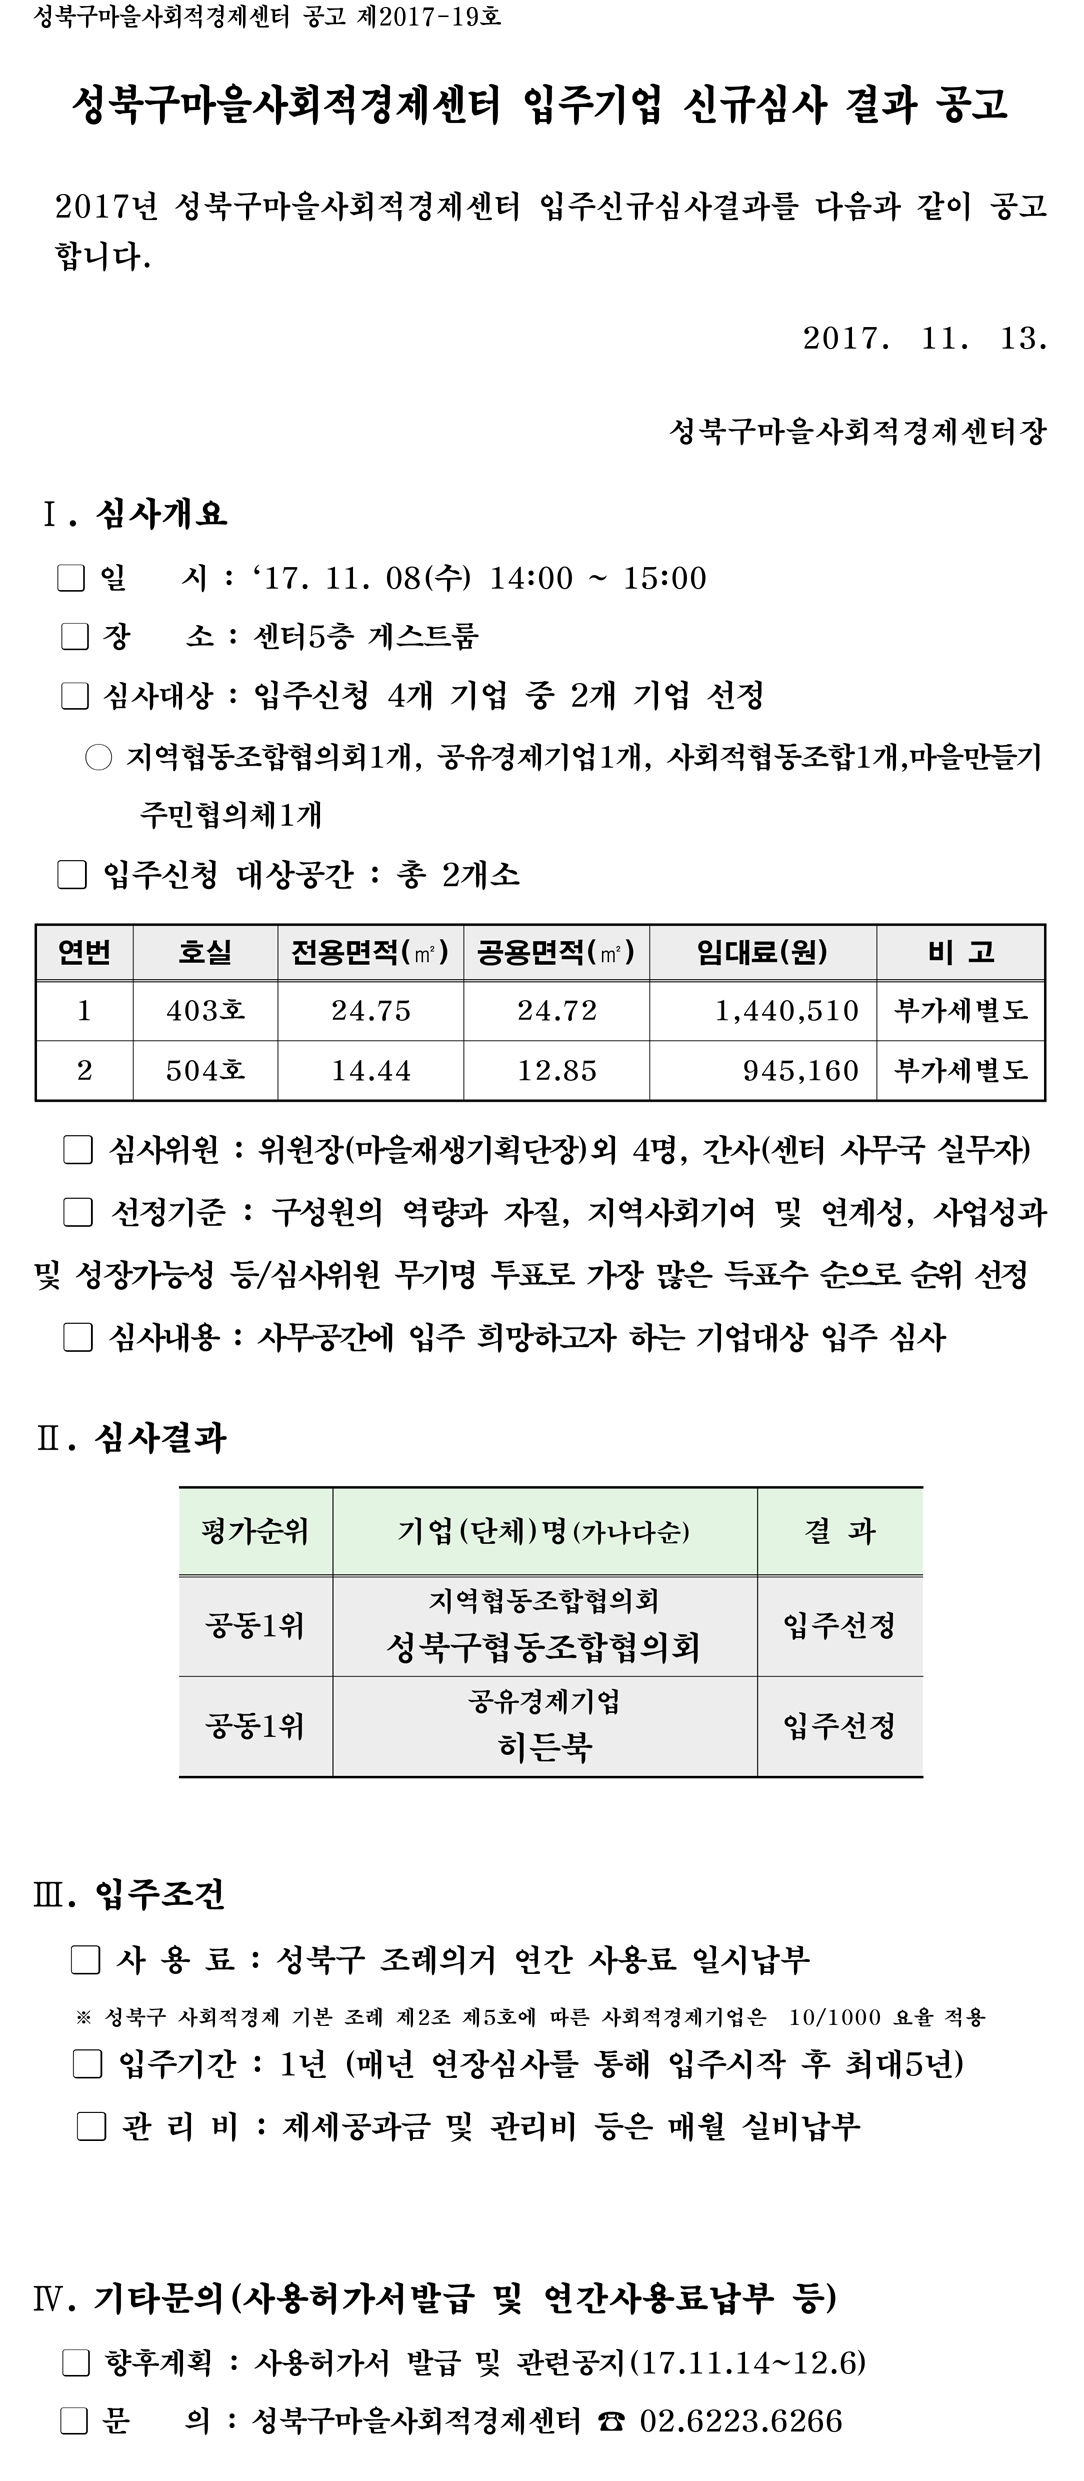 171108_성북구마을사회적경제센터_입주신규선정 결과 공고문(171113)-1.jpg